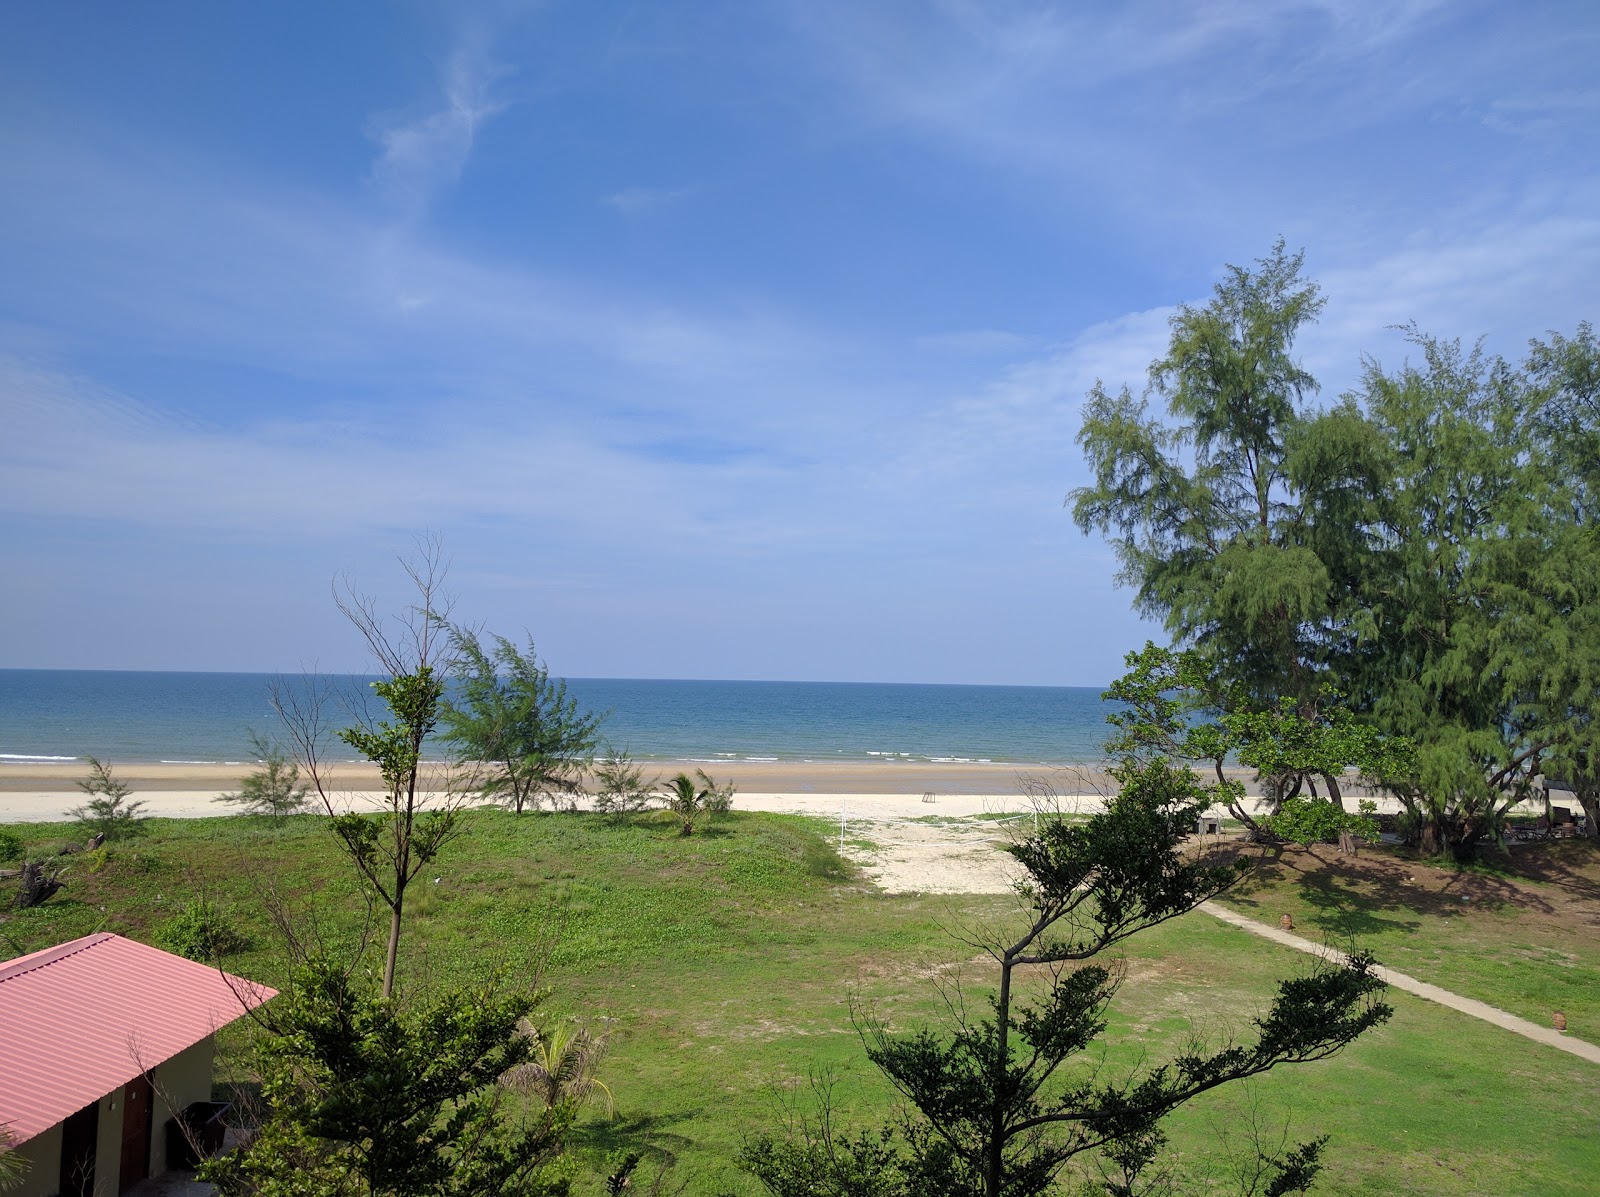 Foto de Gebeng Kampung Beach y el asentamiento